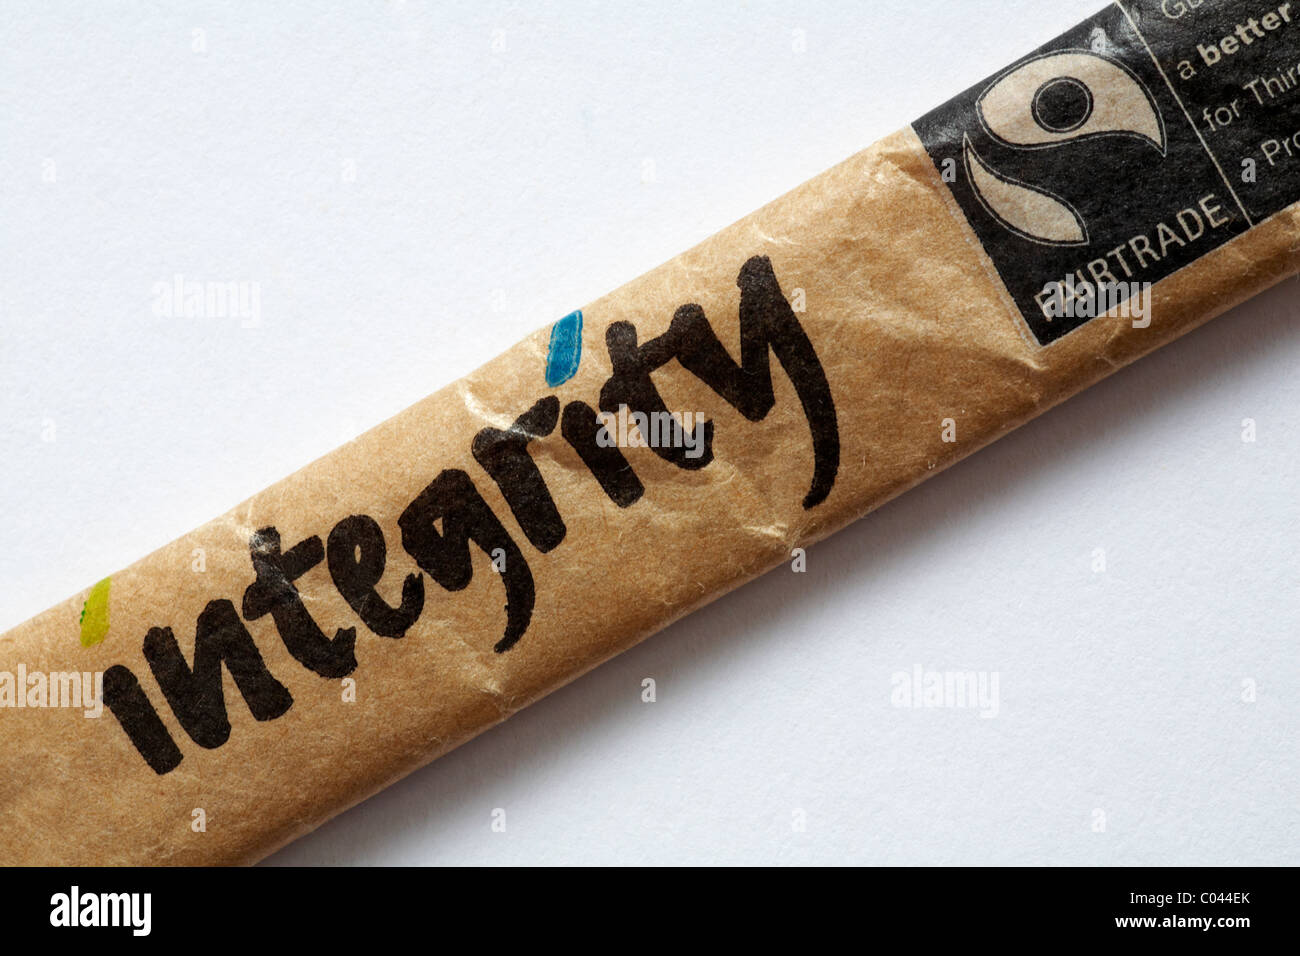 Integrity - sachet of Fairtrade sugar set on white background - Fairtrade logo symbol Fair Trade Stock Photo